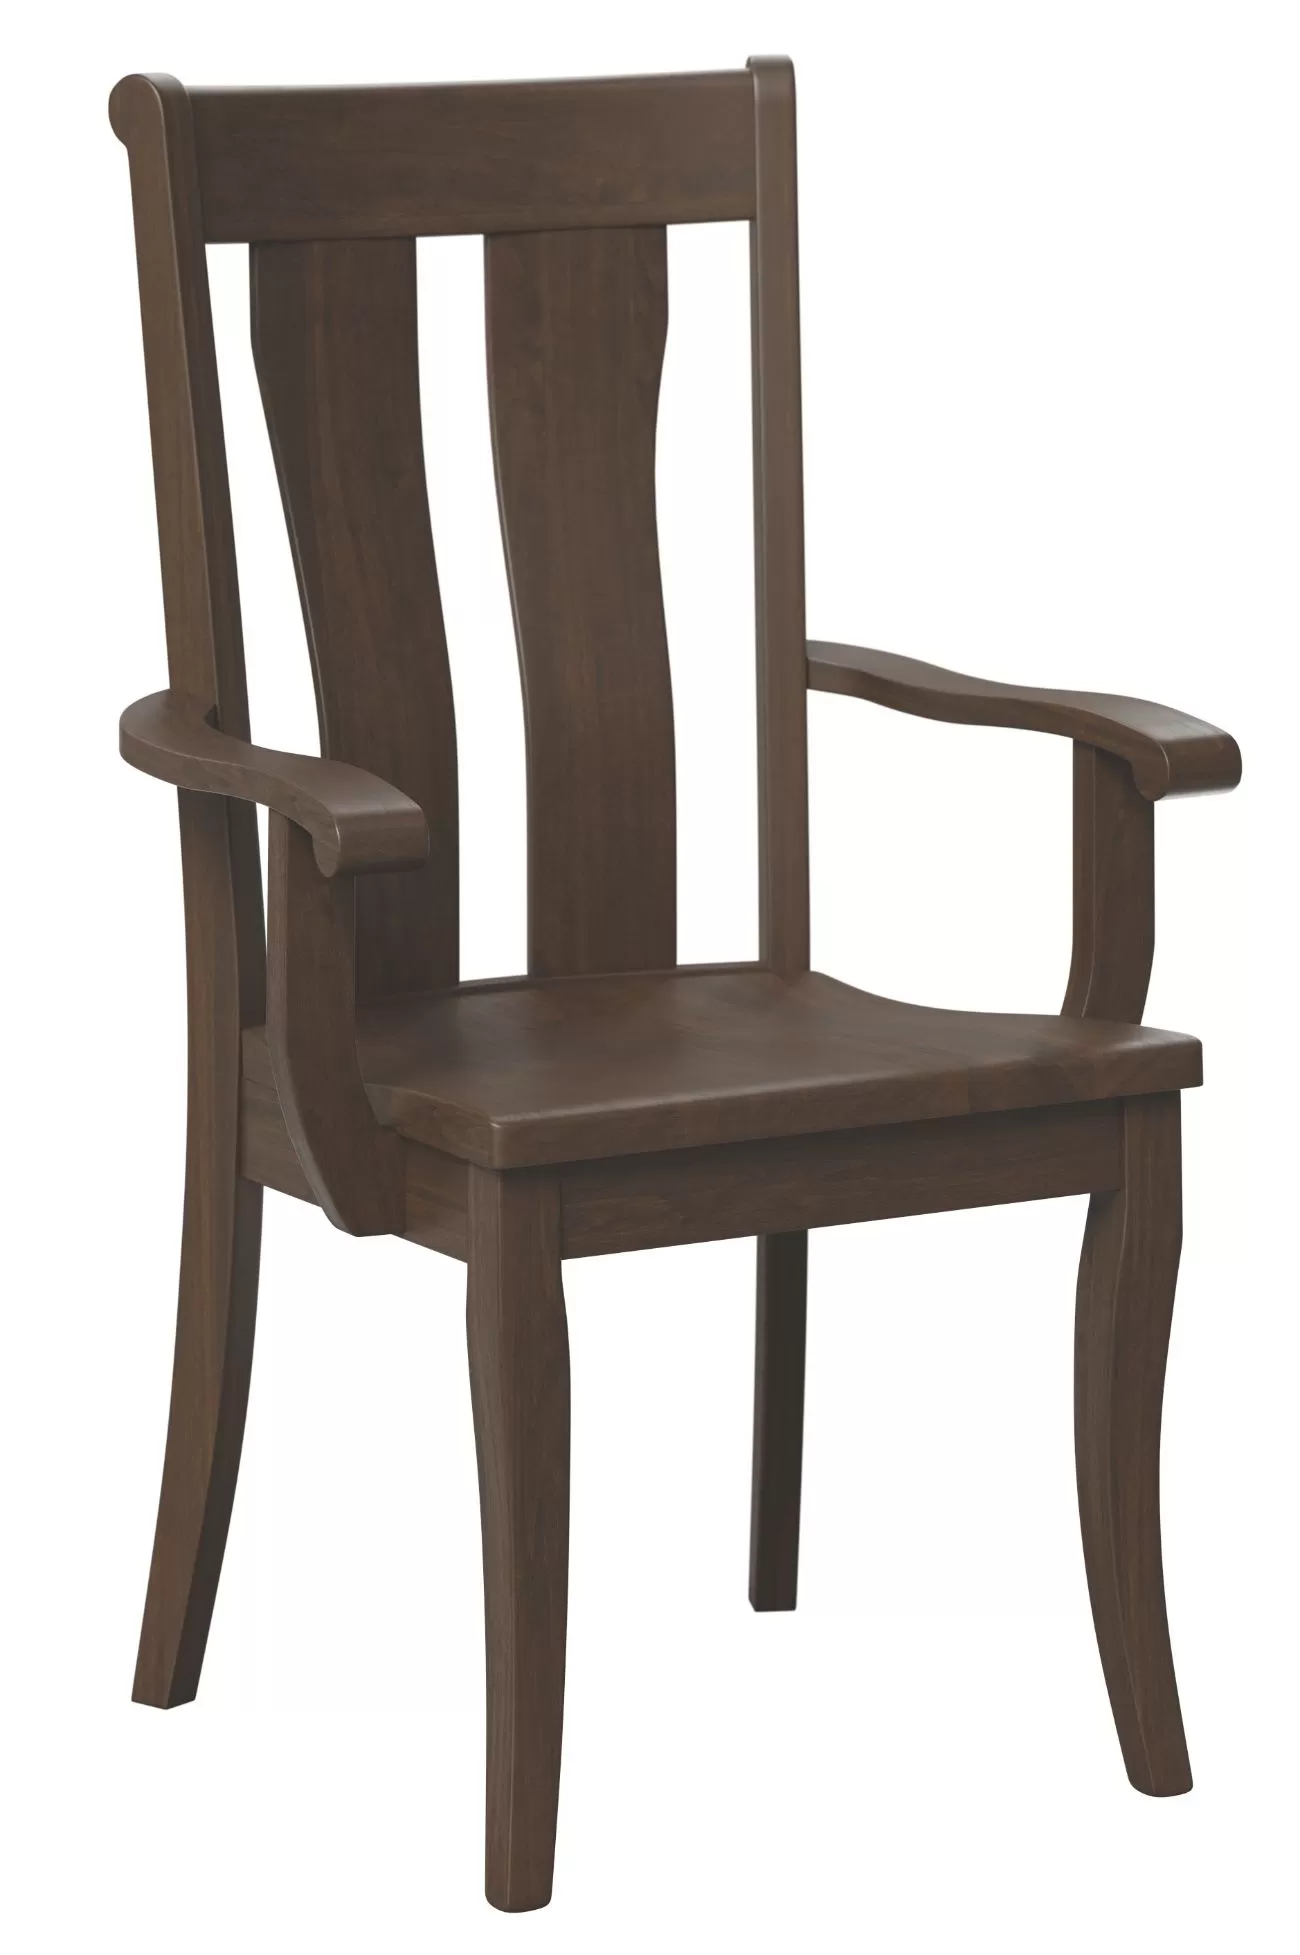 Collin arm chair